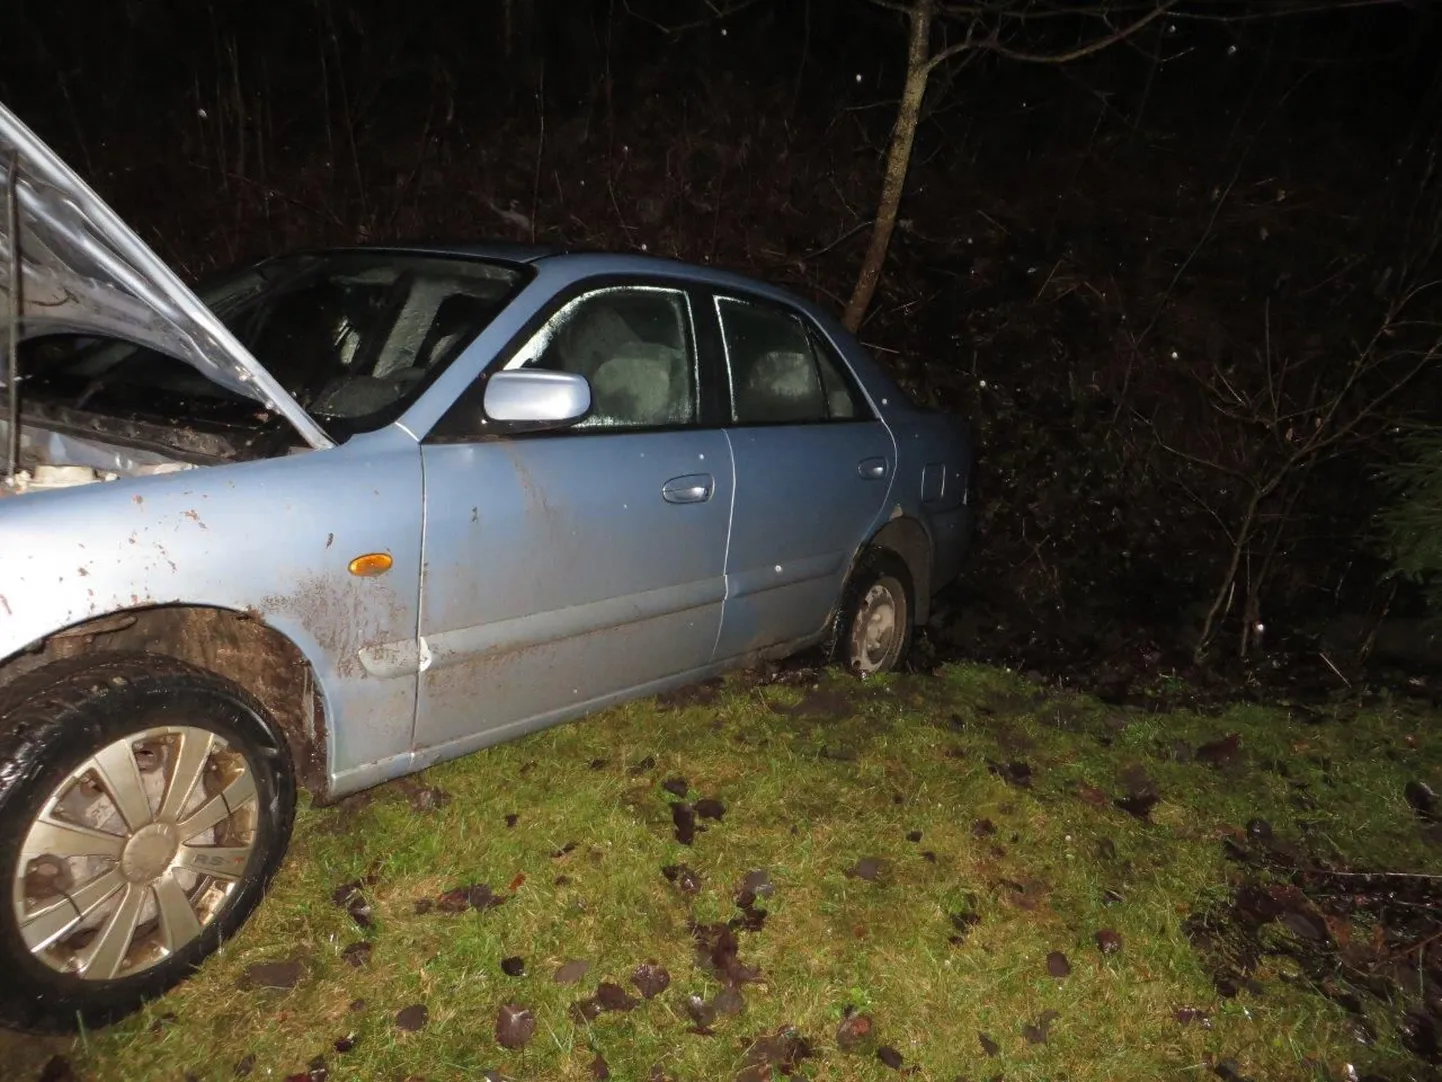 15 aastat vana Mazda oli kraavi tagurdanud, ka oli avariiline selle esiosa.